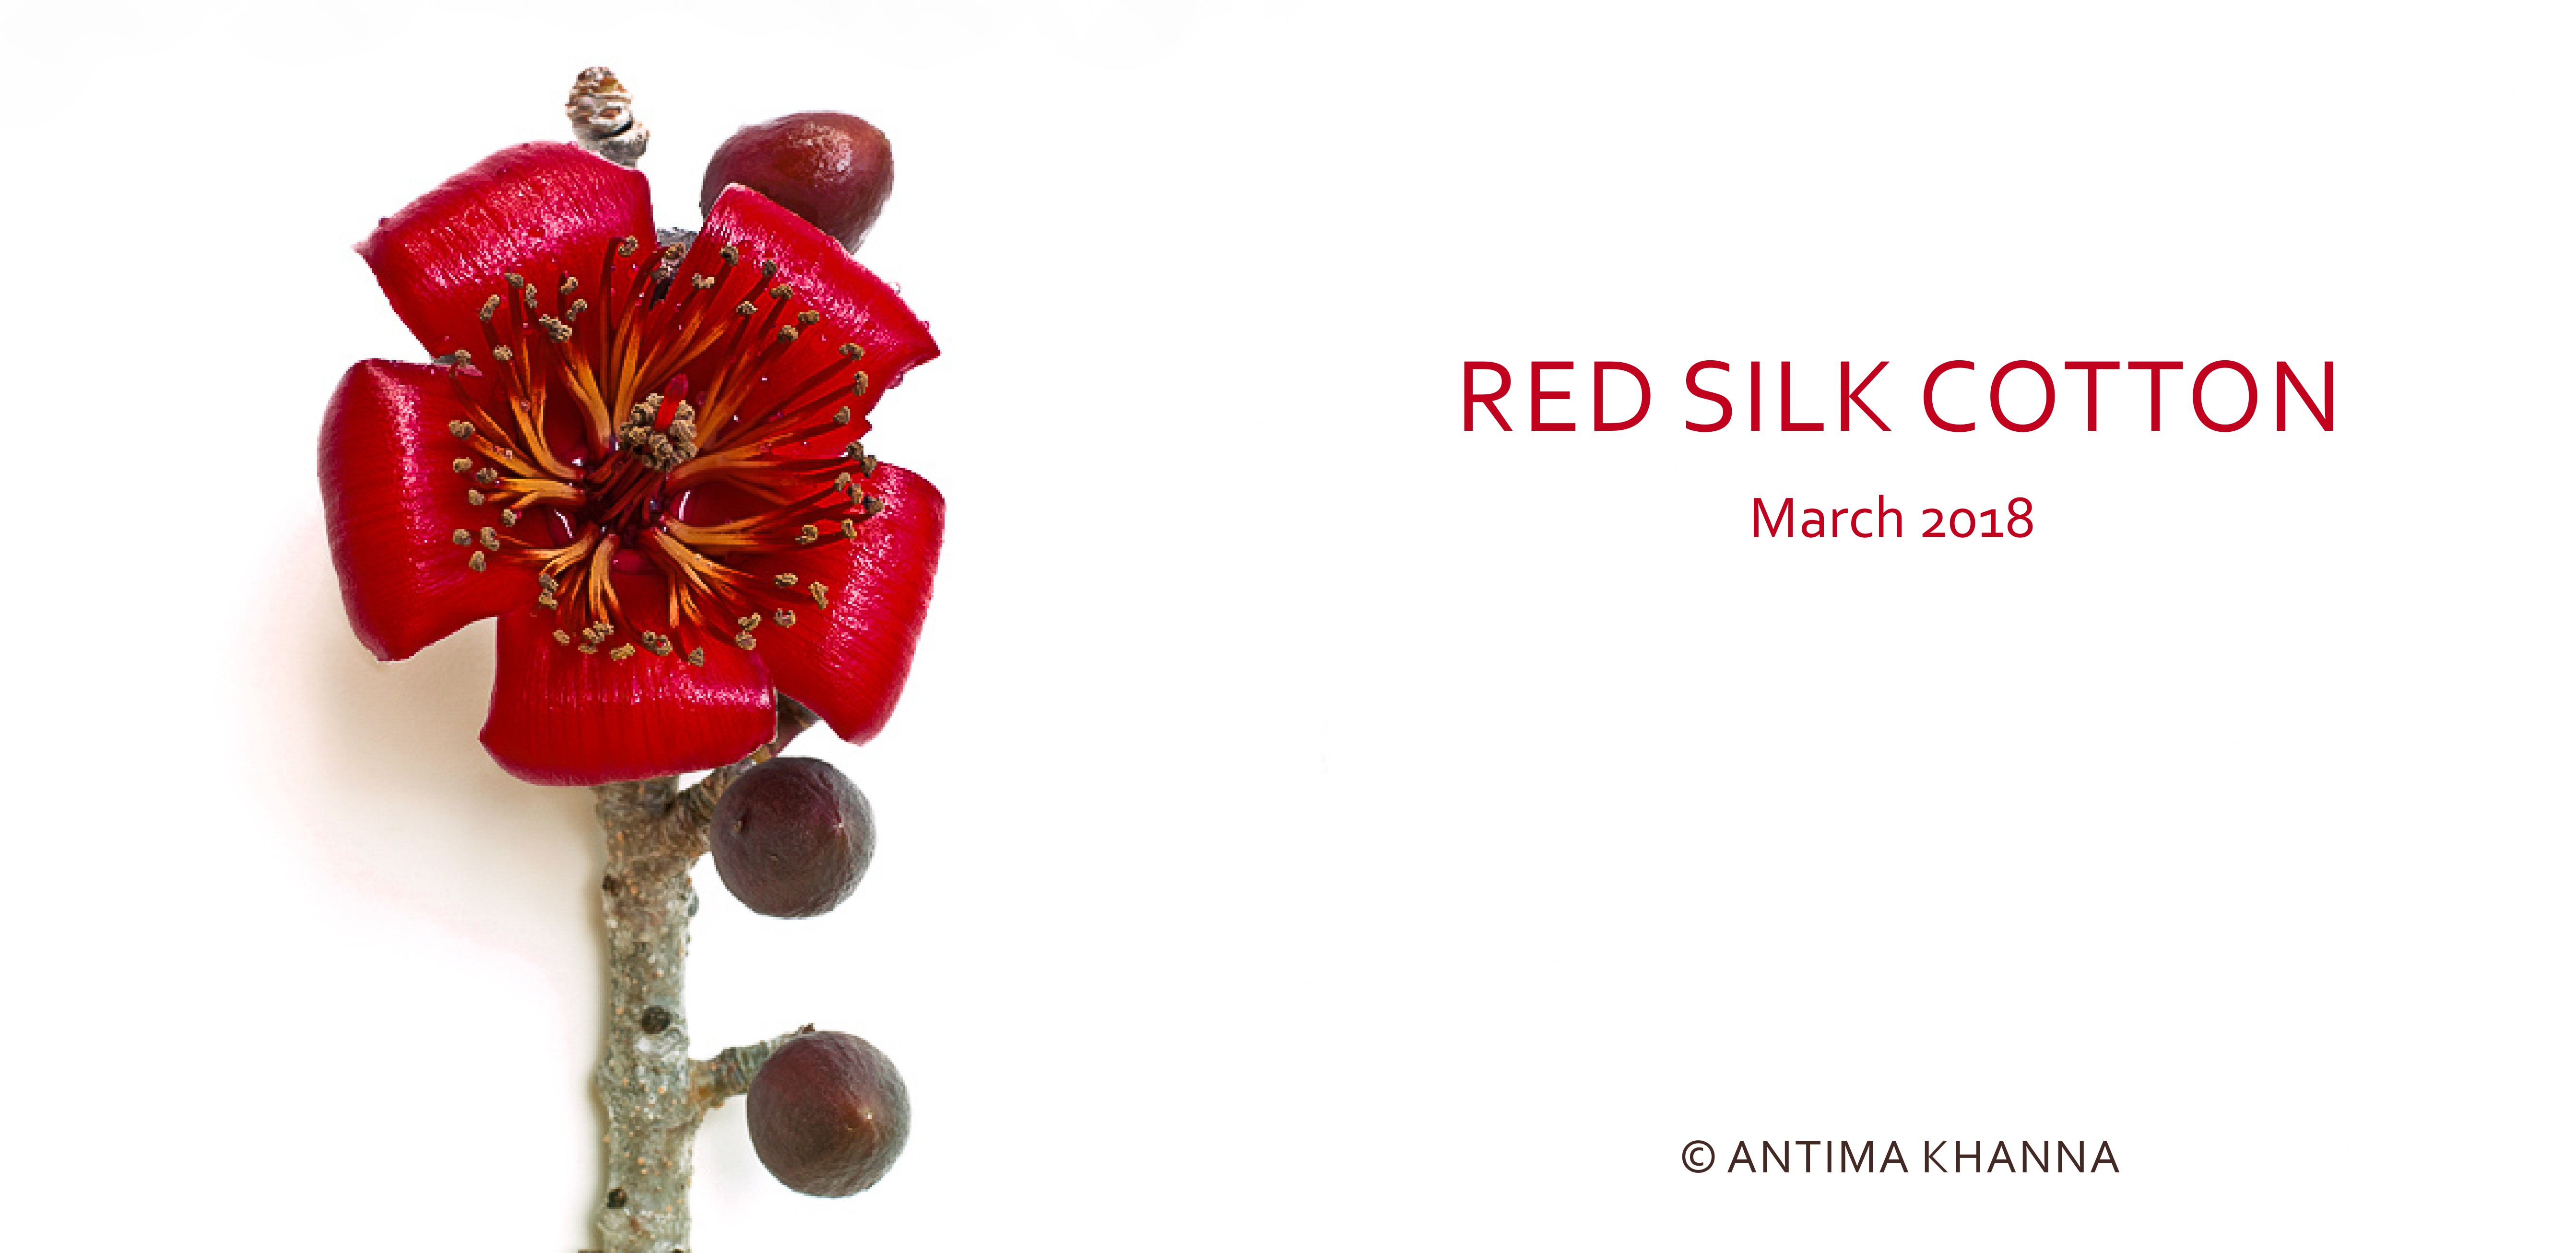 Red Silk Cotton